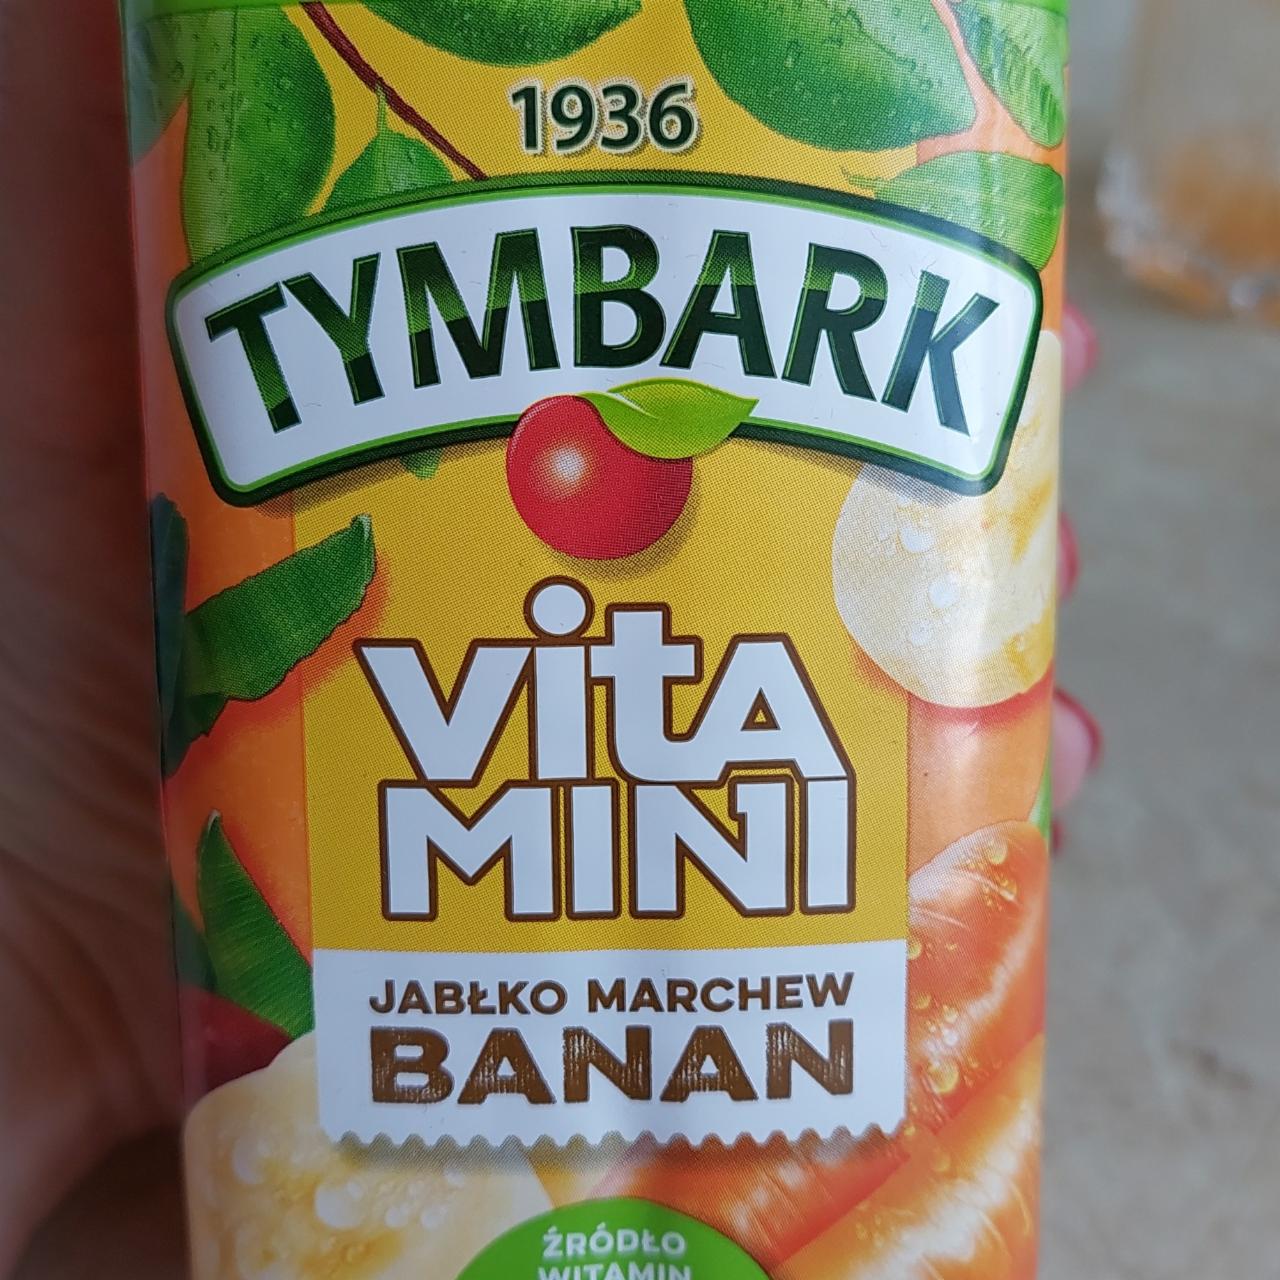 Zdjęcia - Tymbark Vitamini Sok banan jabłko marchew 1 l